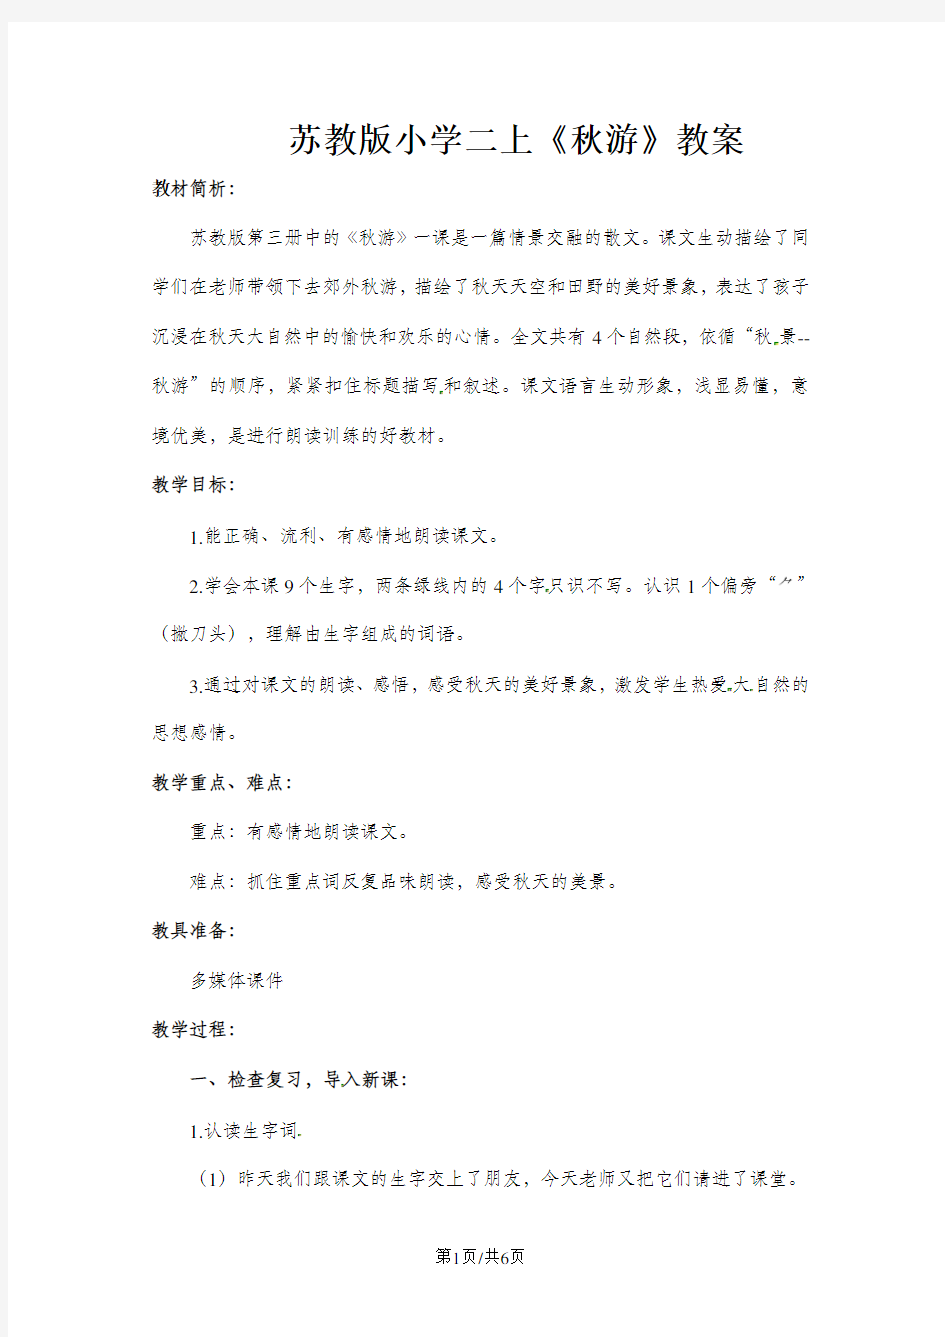 二年级上册语文教案1秋游_苏教版